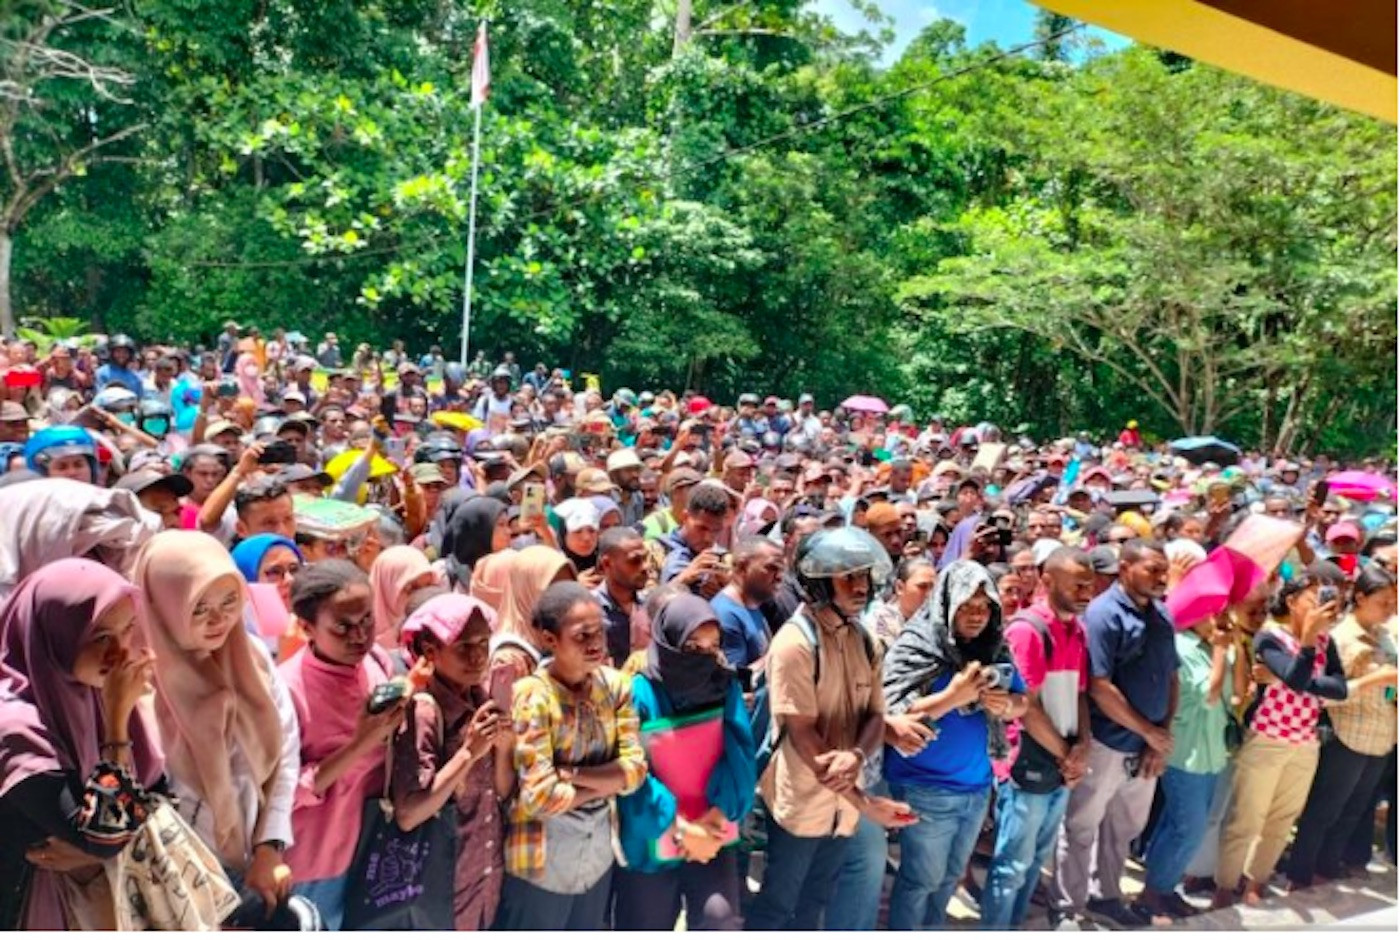 Ribuan Orang Mendaftar Ikut Seleksi CPNS di Sorong Selatan, Lihat - JPNN.com Papua